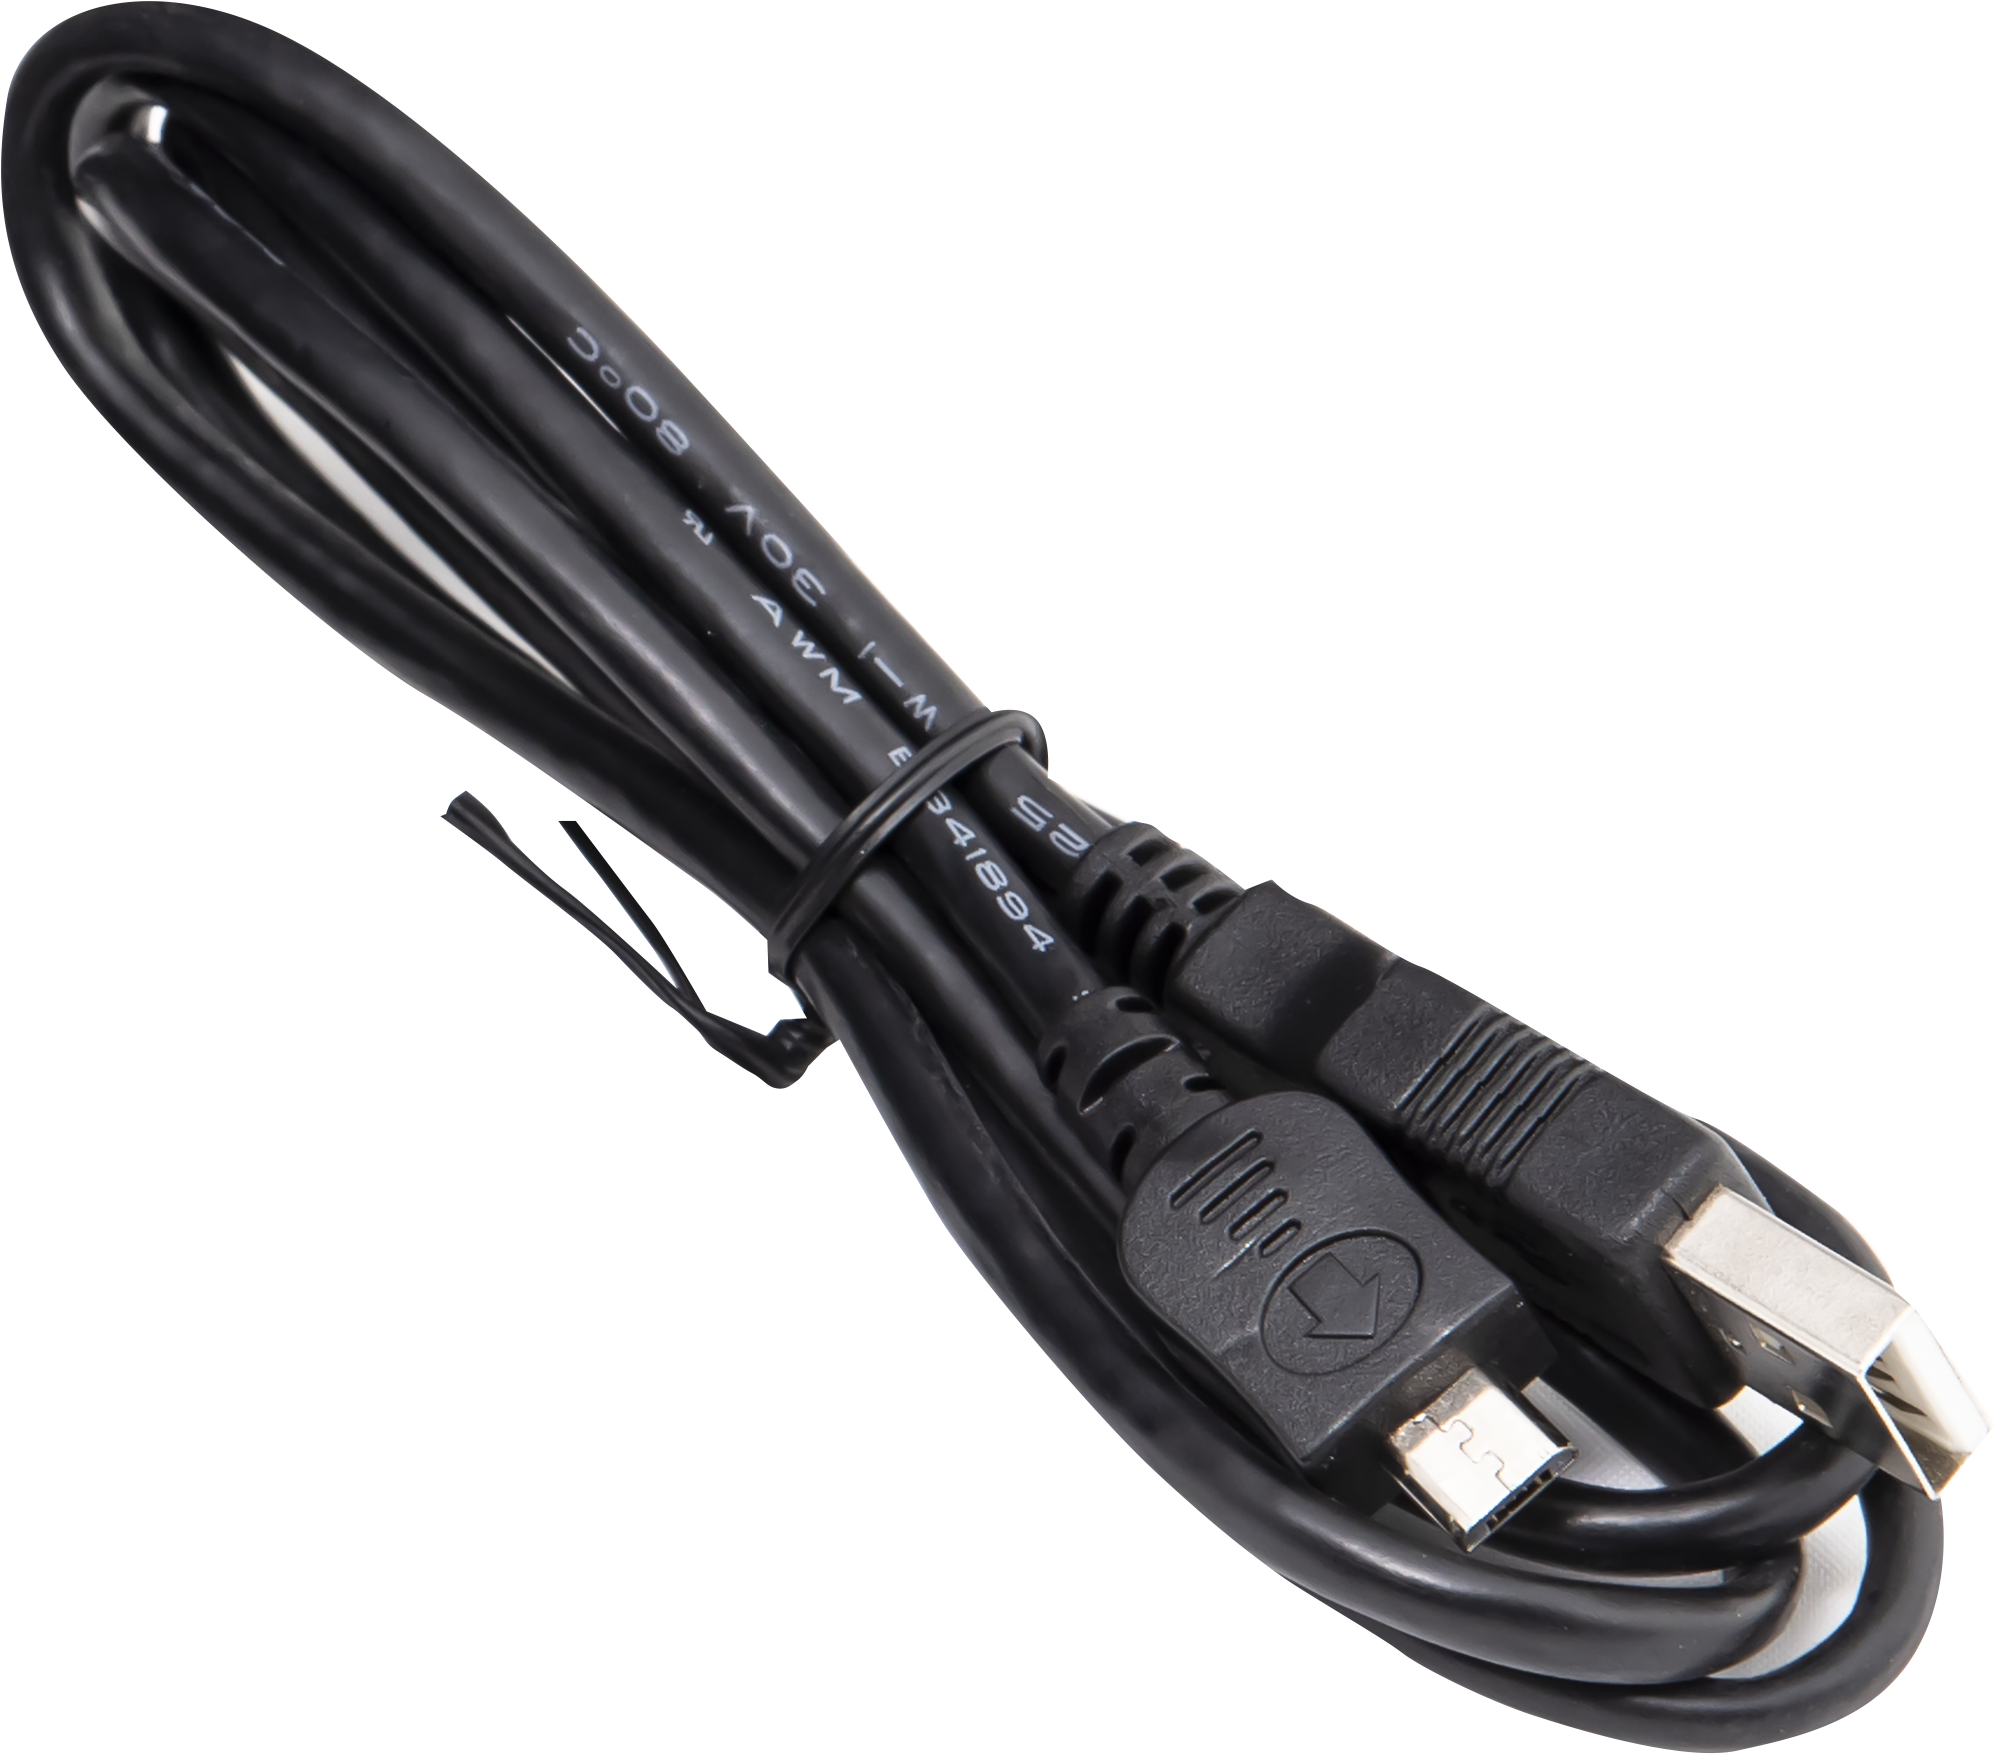 Beere/Schwarz möglich, Handventilator USB oder Farbauswahl Blau/Schwarz (4 Watt) nicht 22320 KOENIC KHF